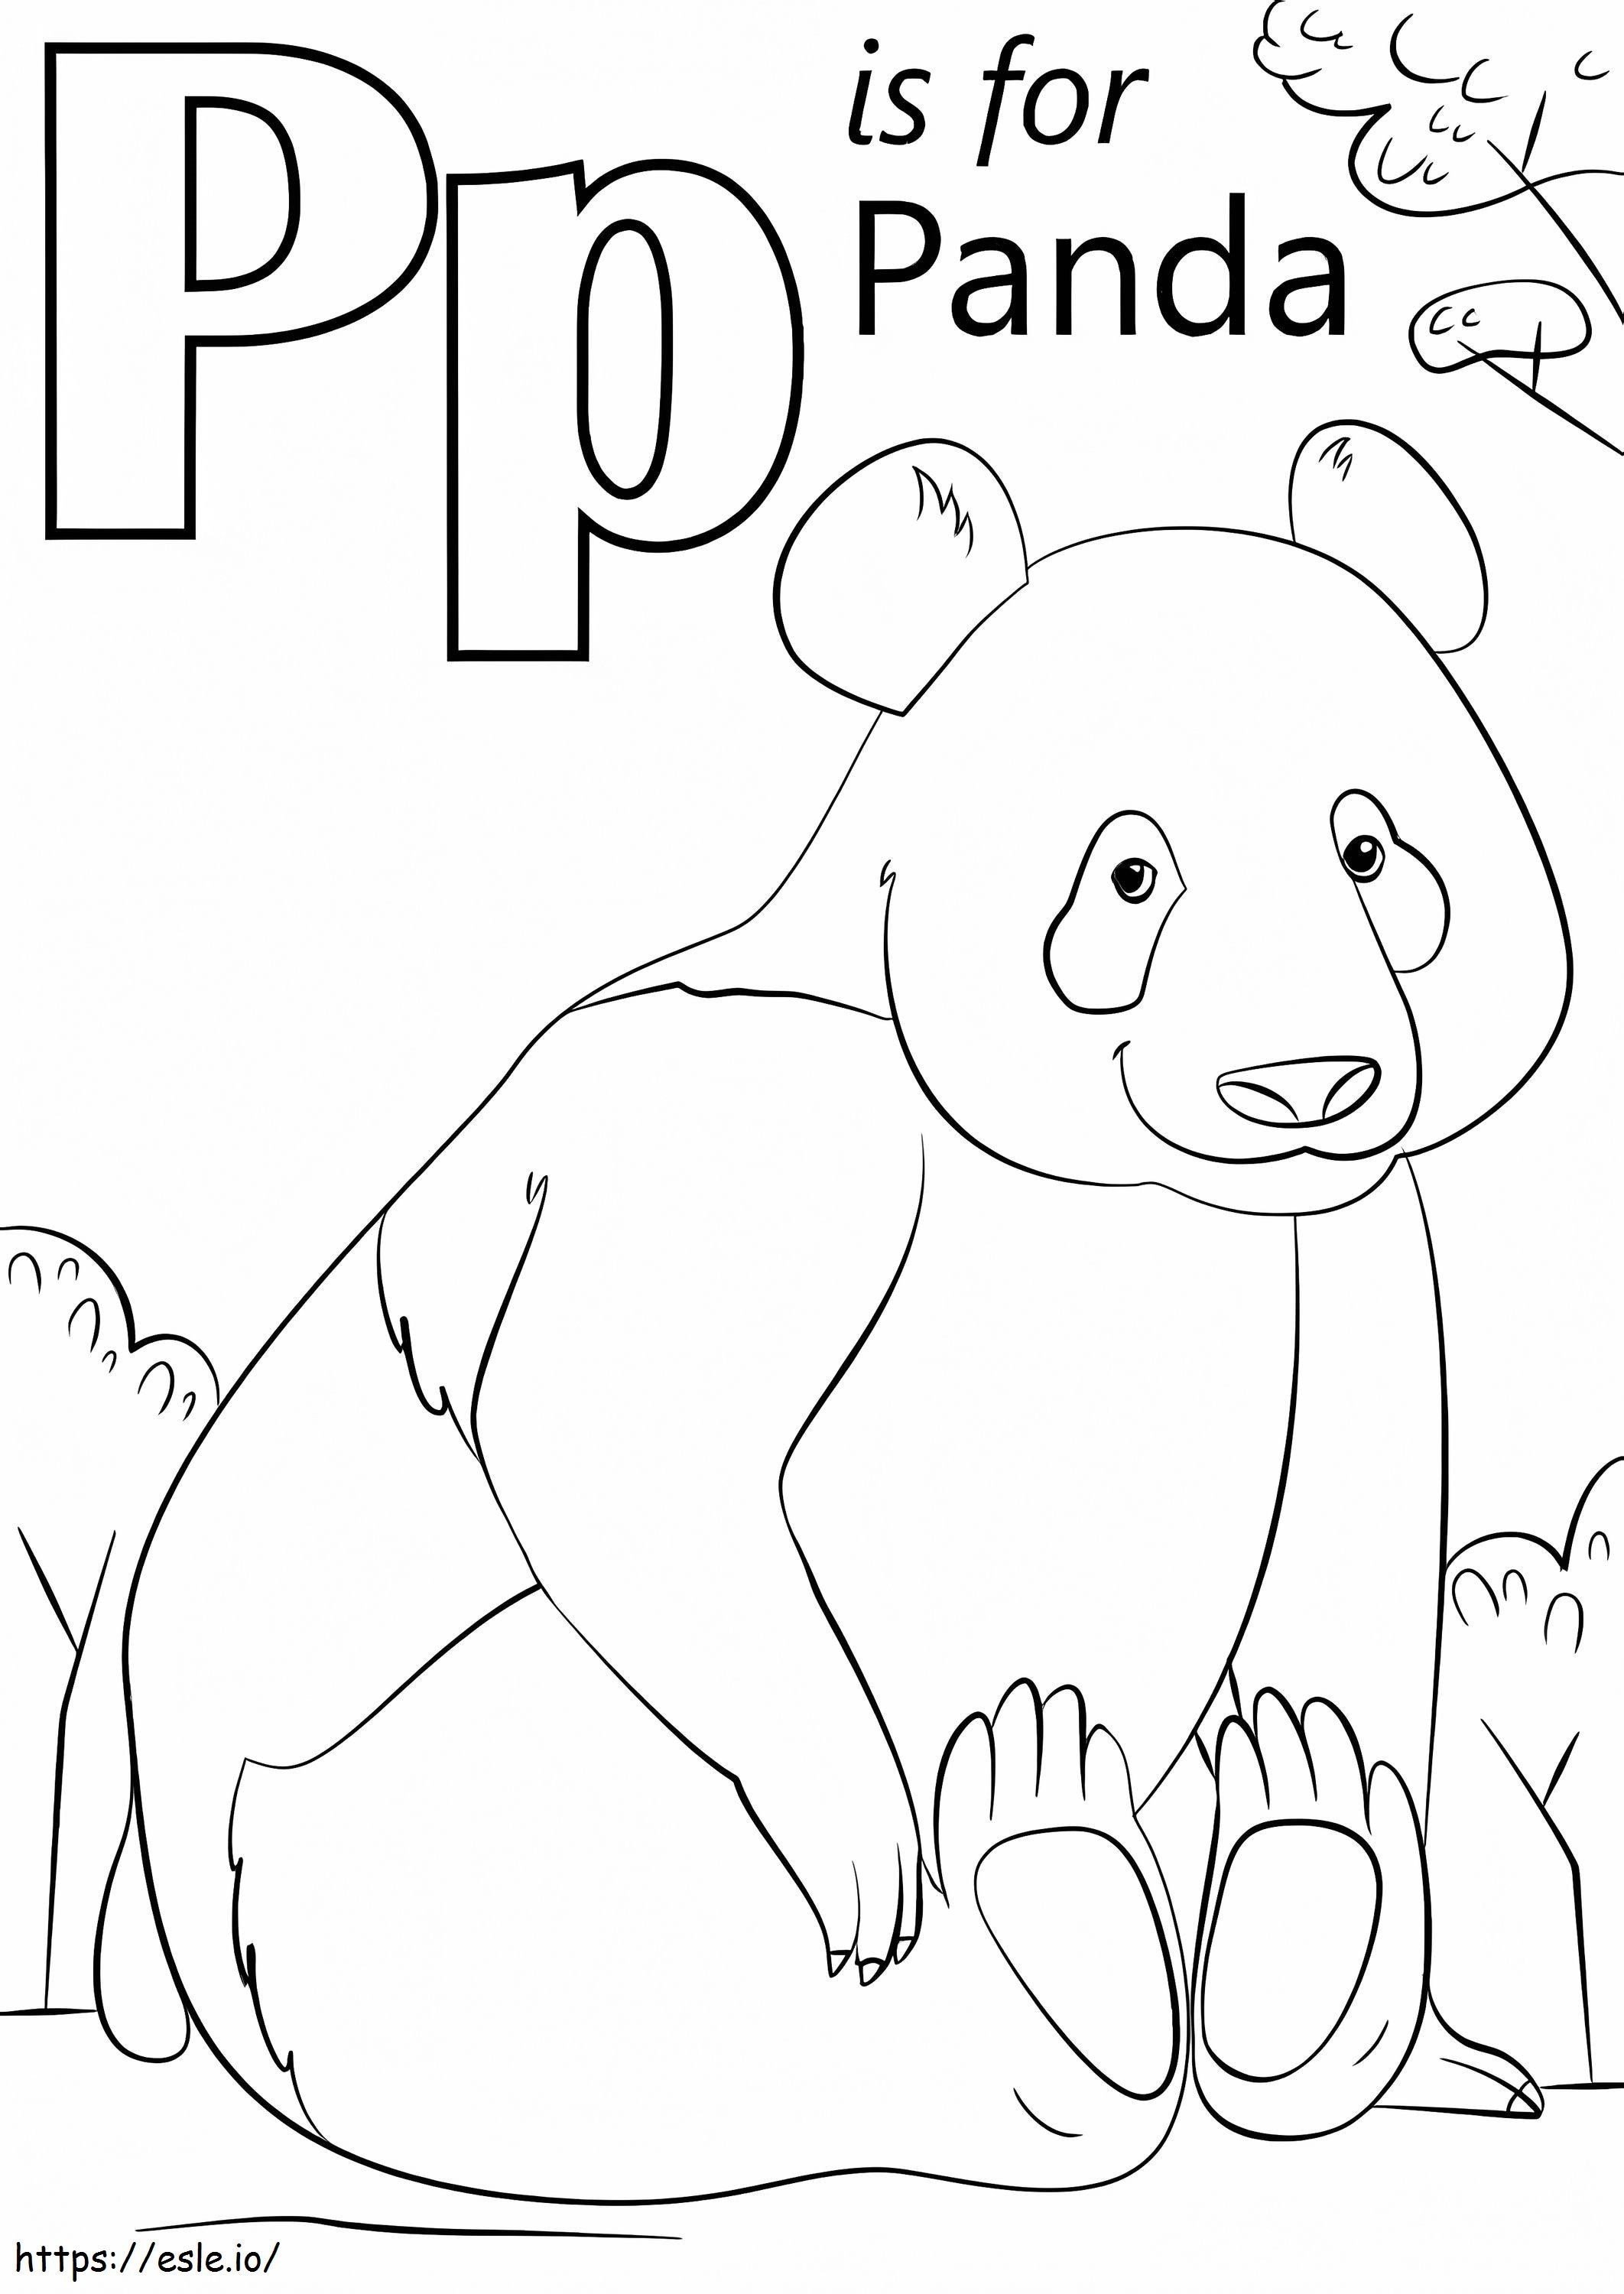 Panda Lyrics P coloring page